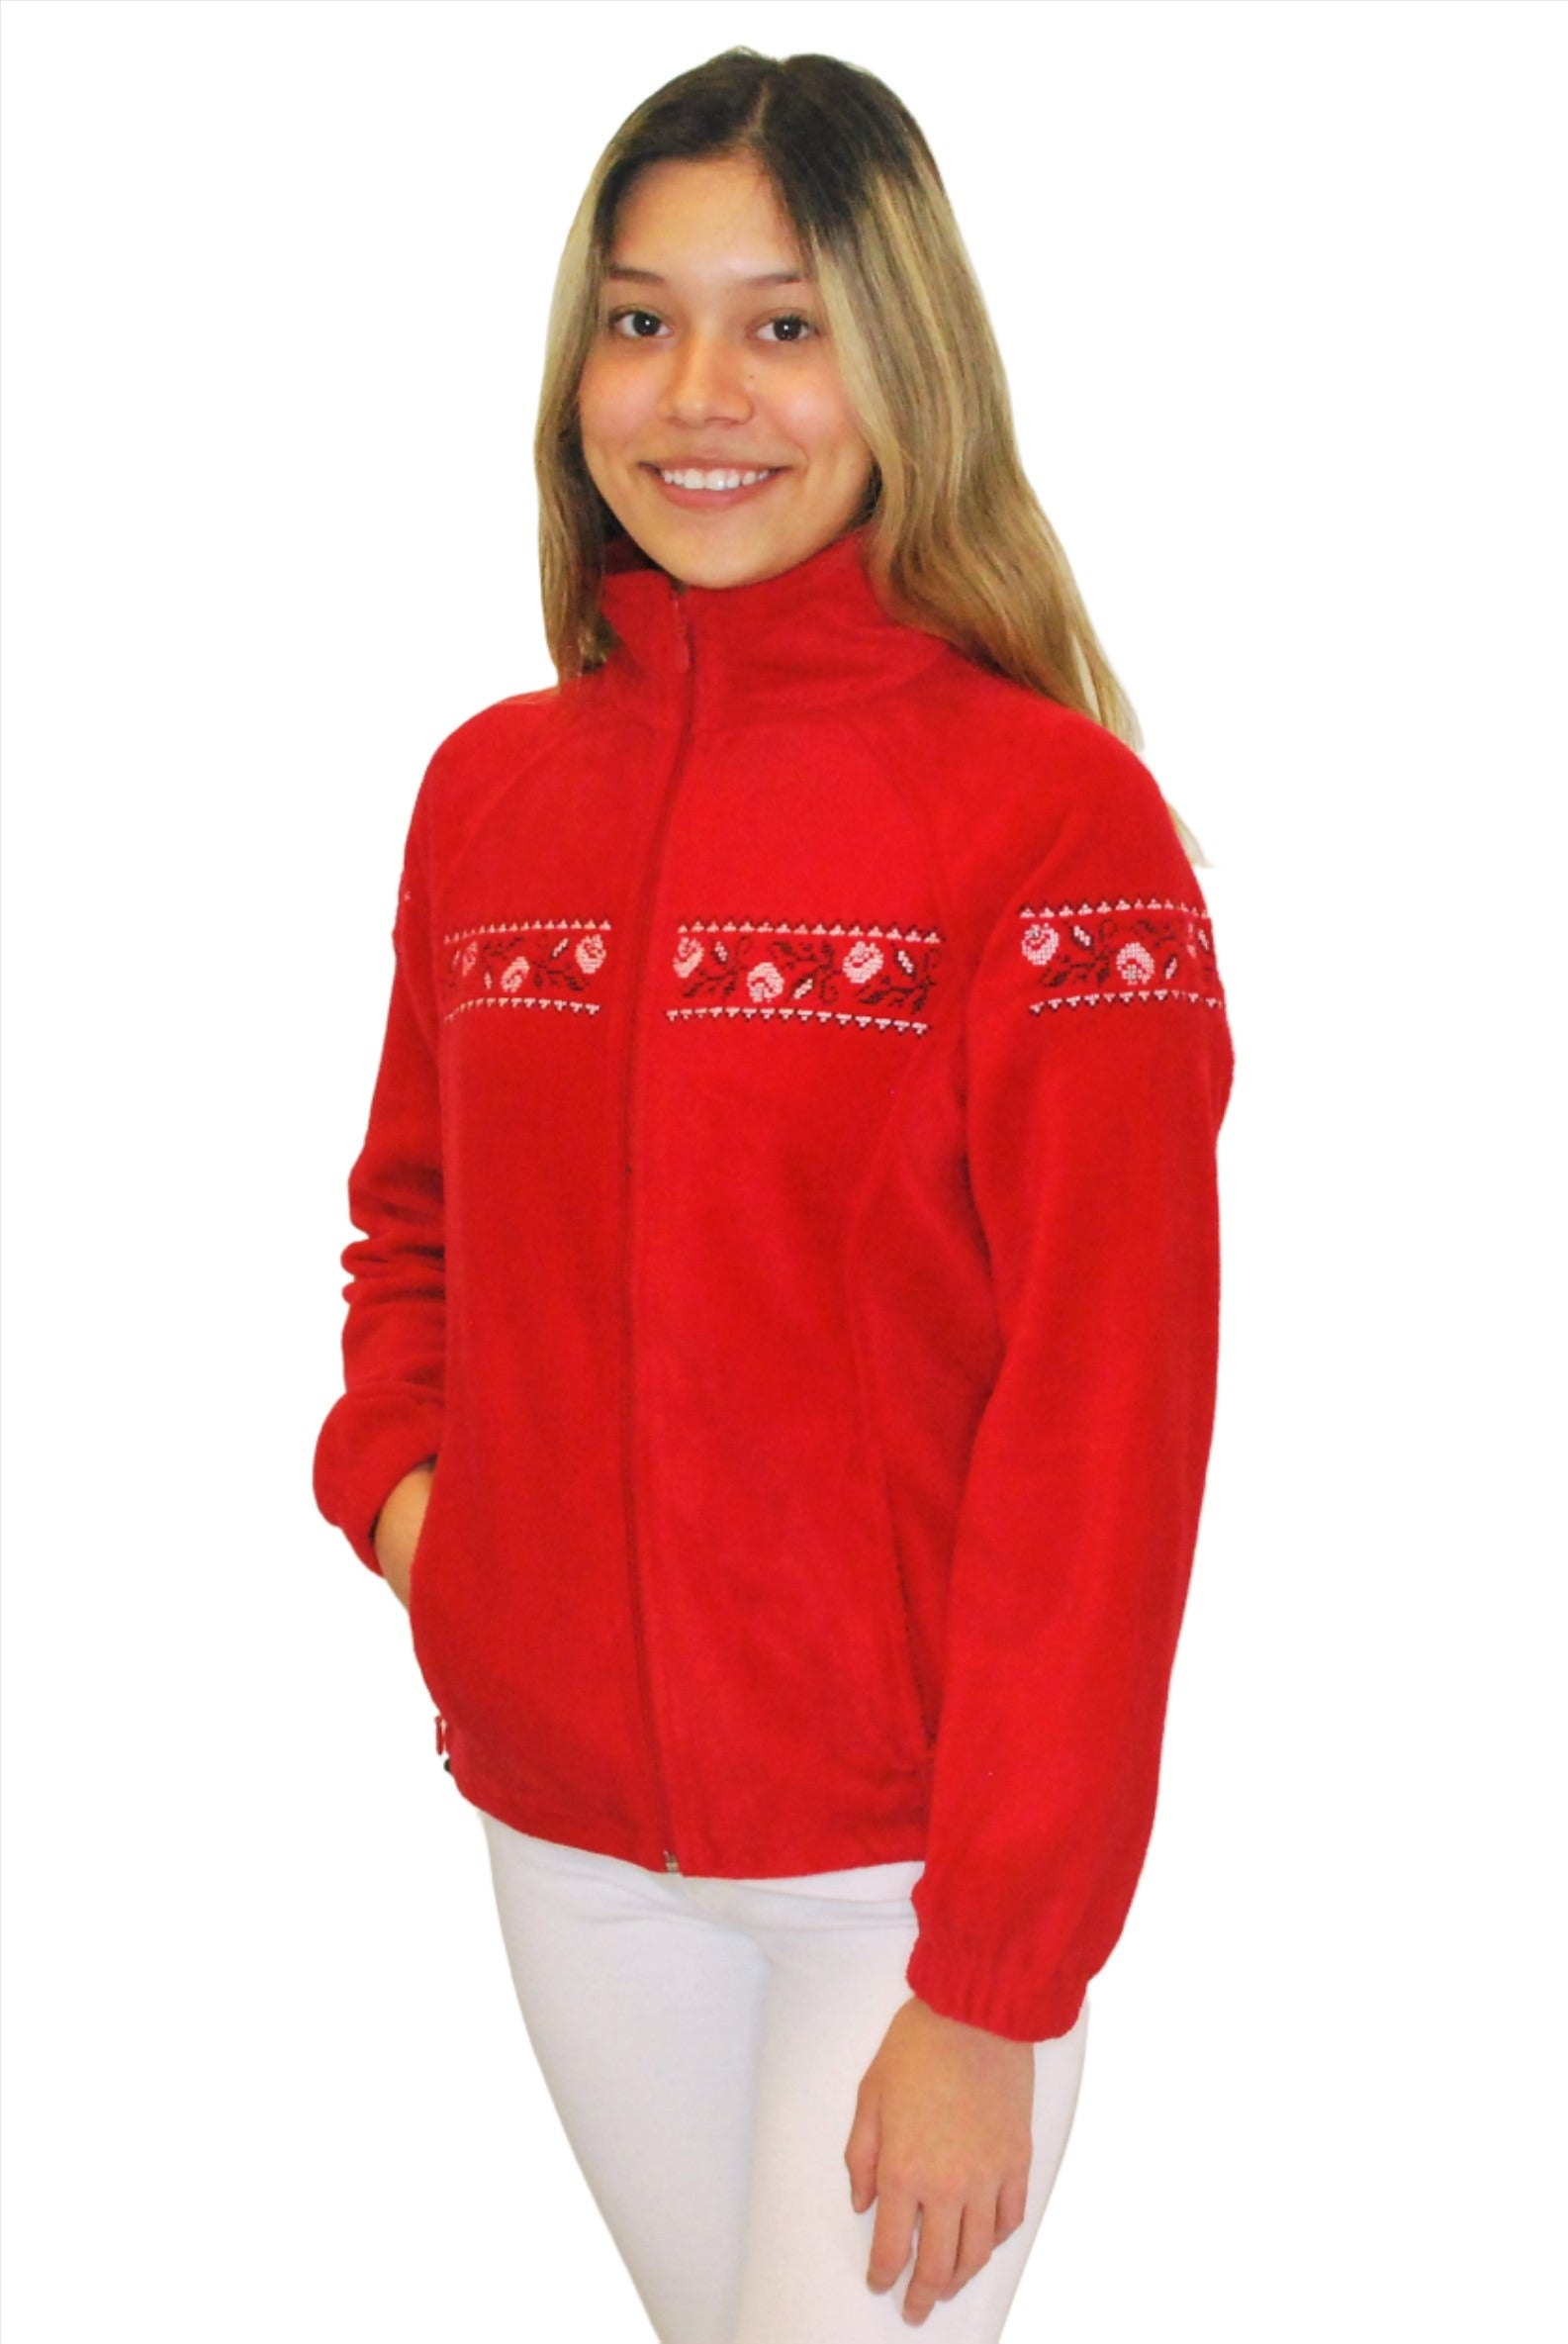 Women's embroidered full-zip fleece jacket. Red